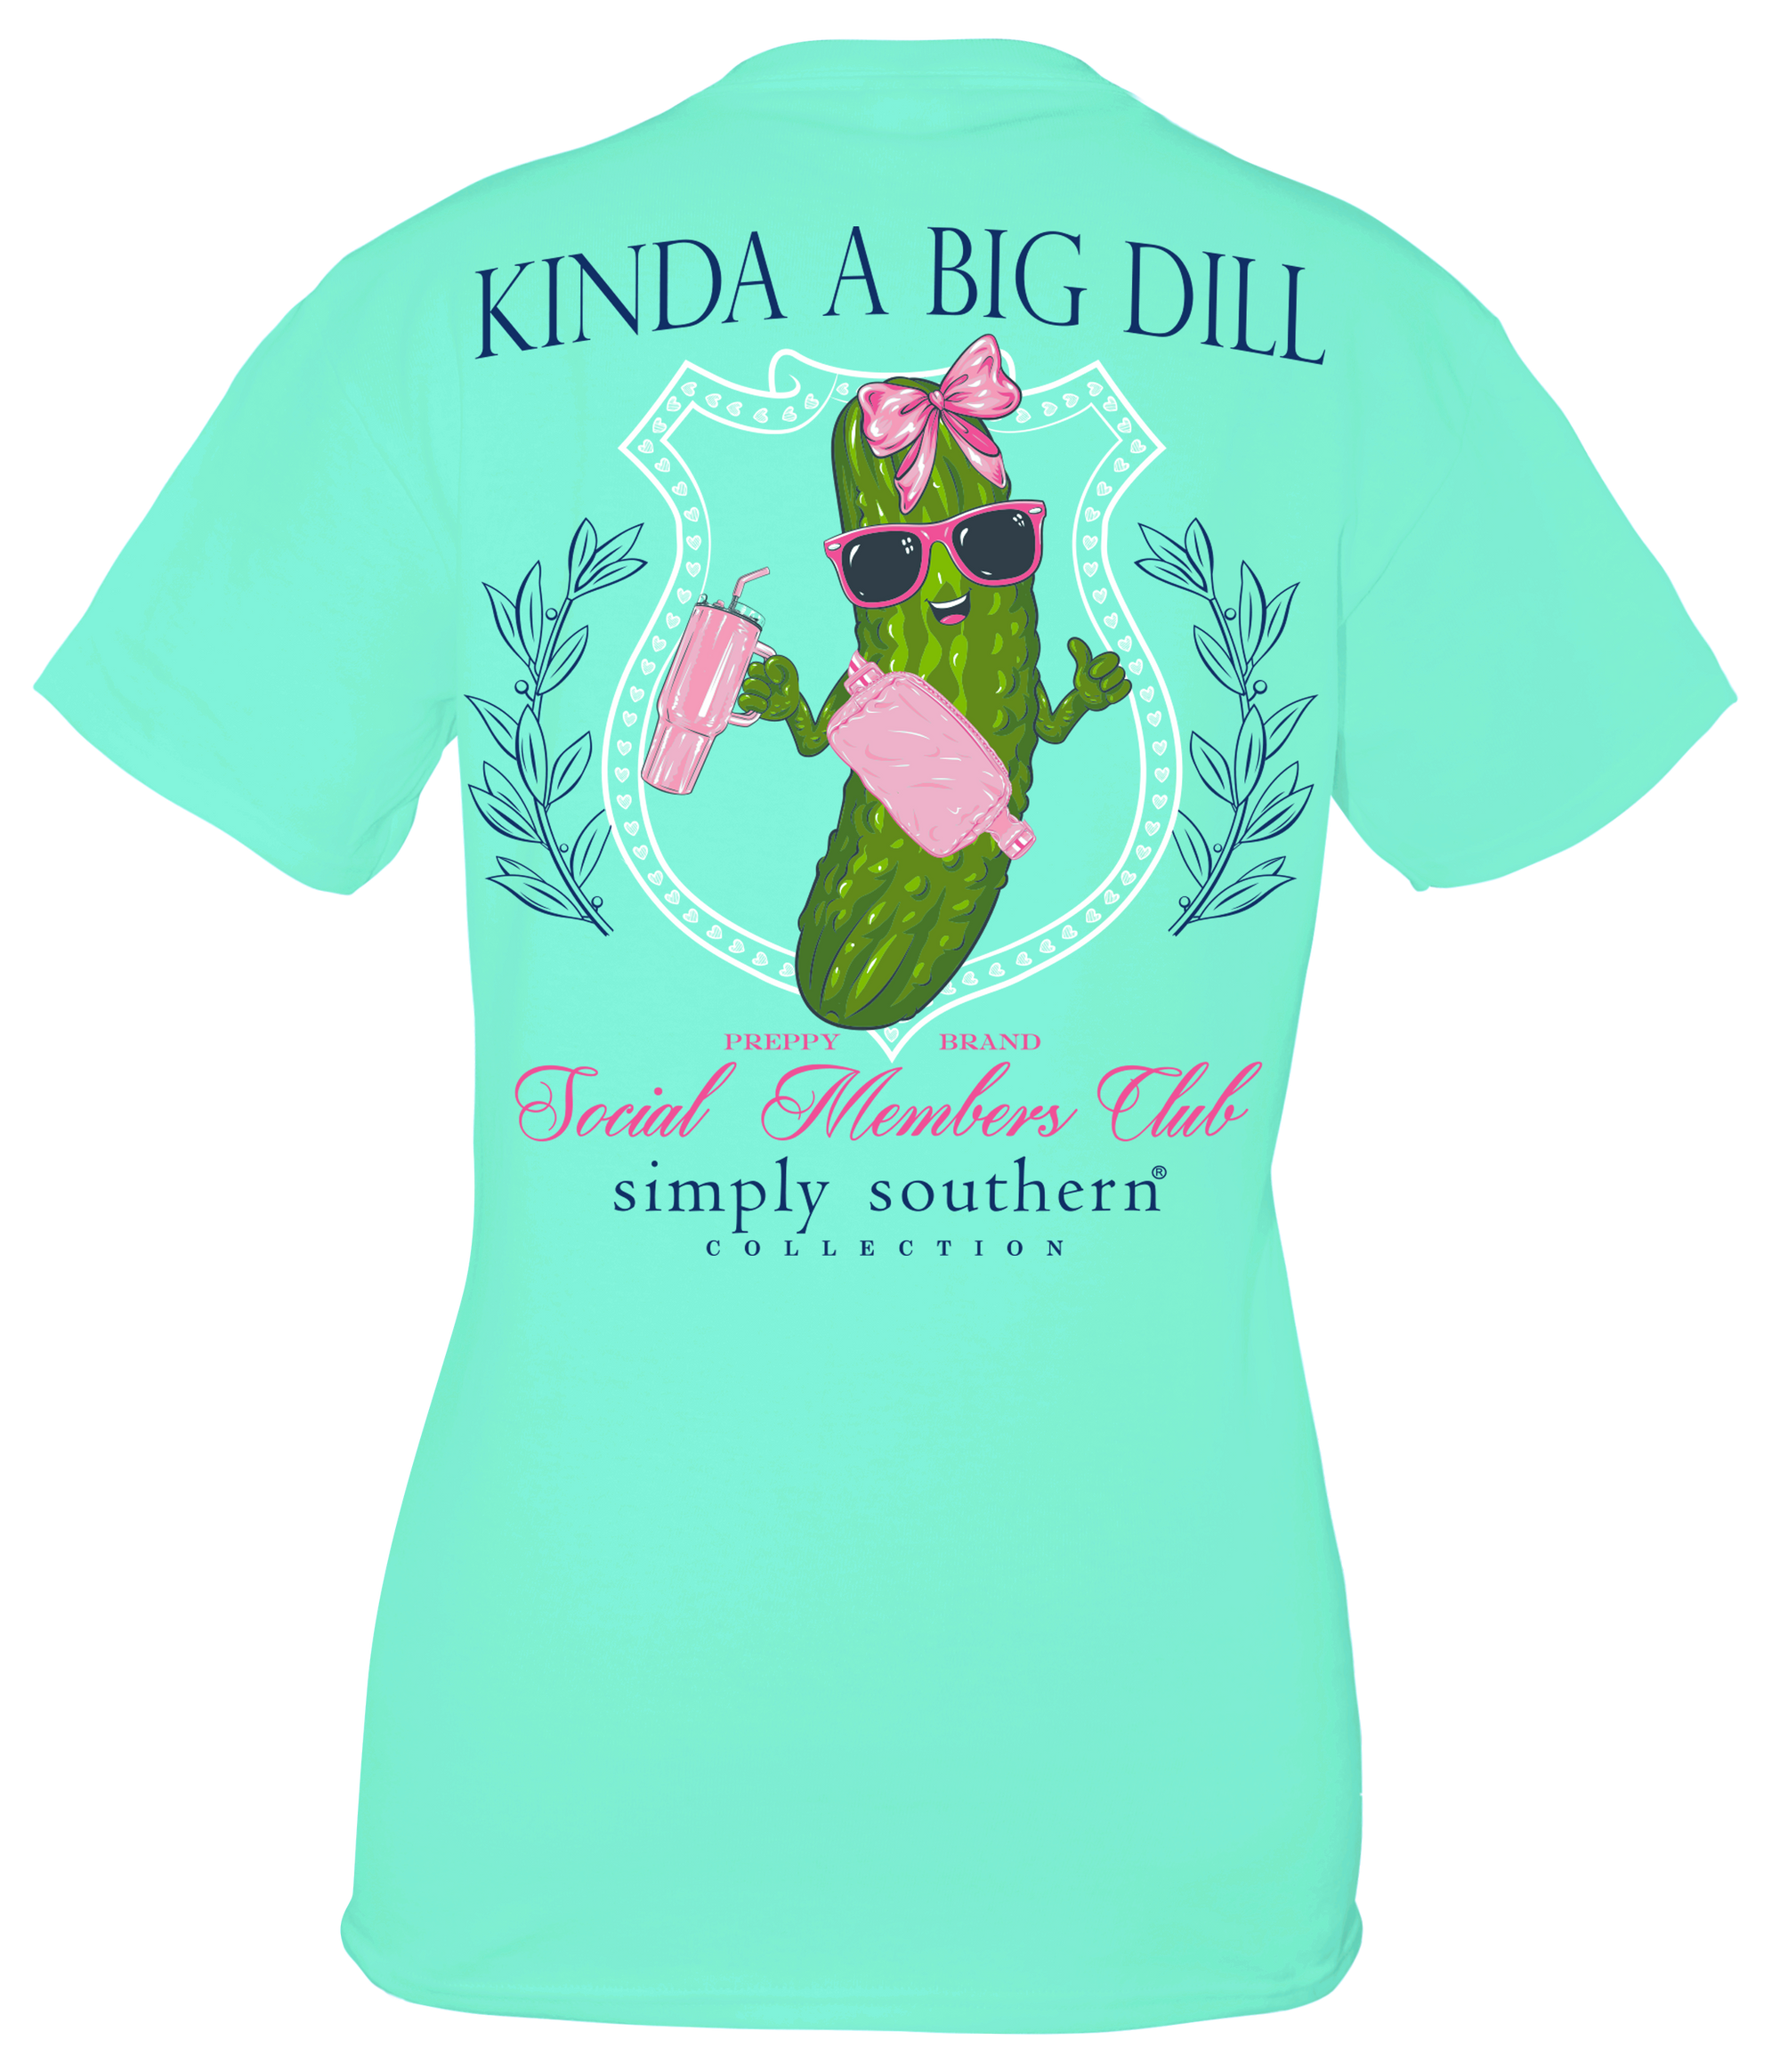 Simply Southern Kinda A Big Dill Social Club T-Shirt